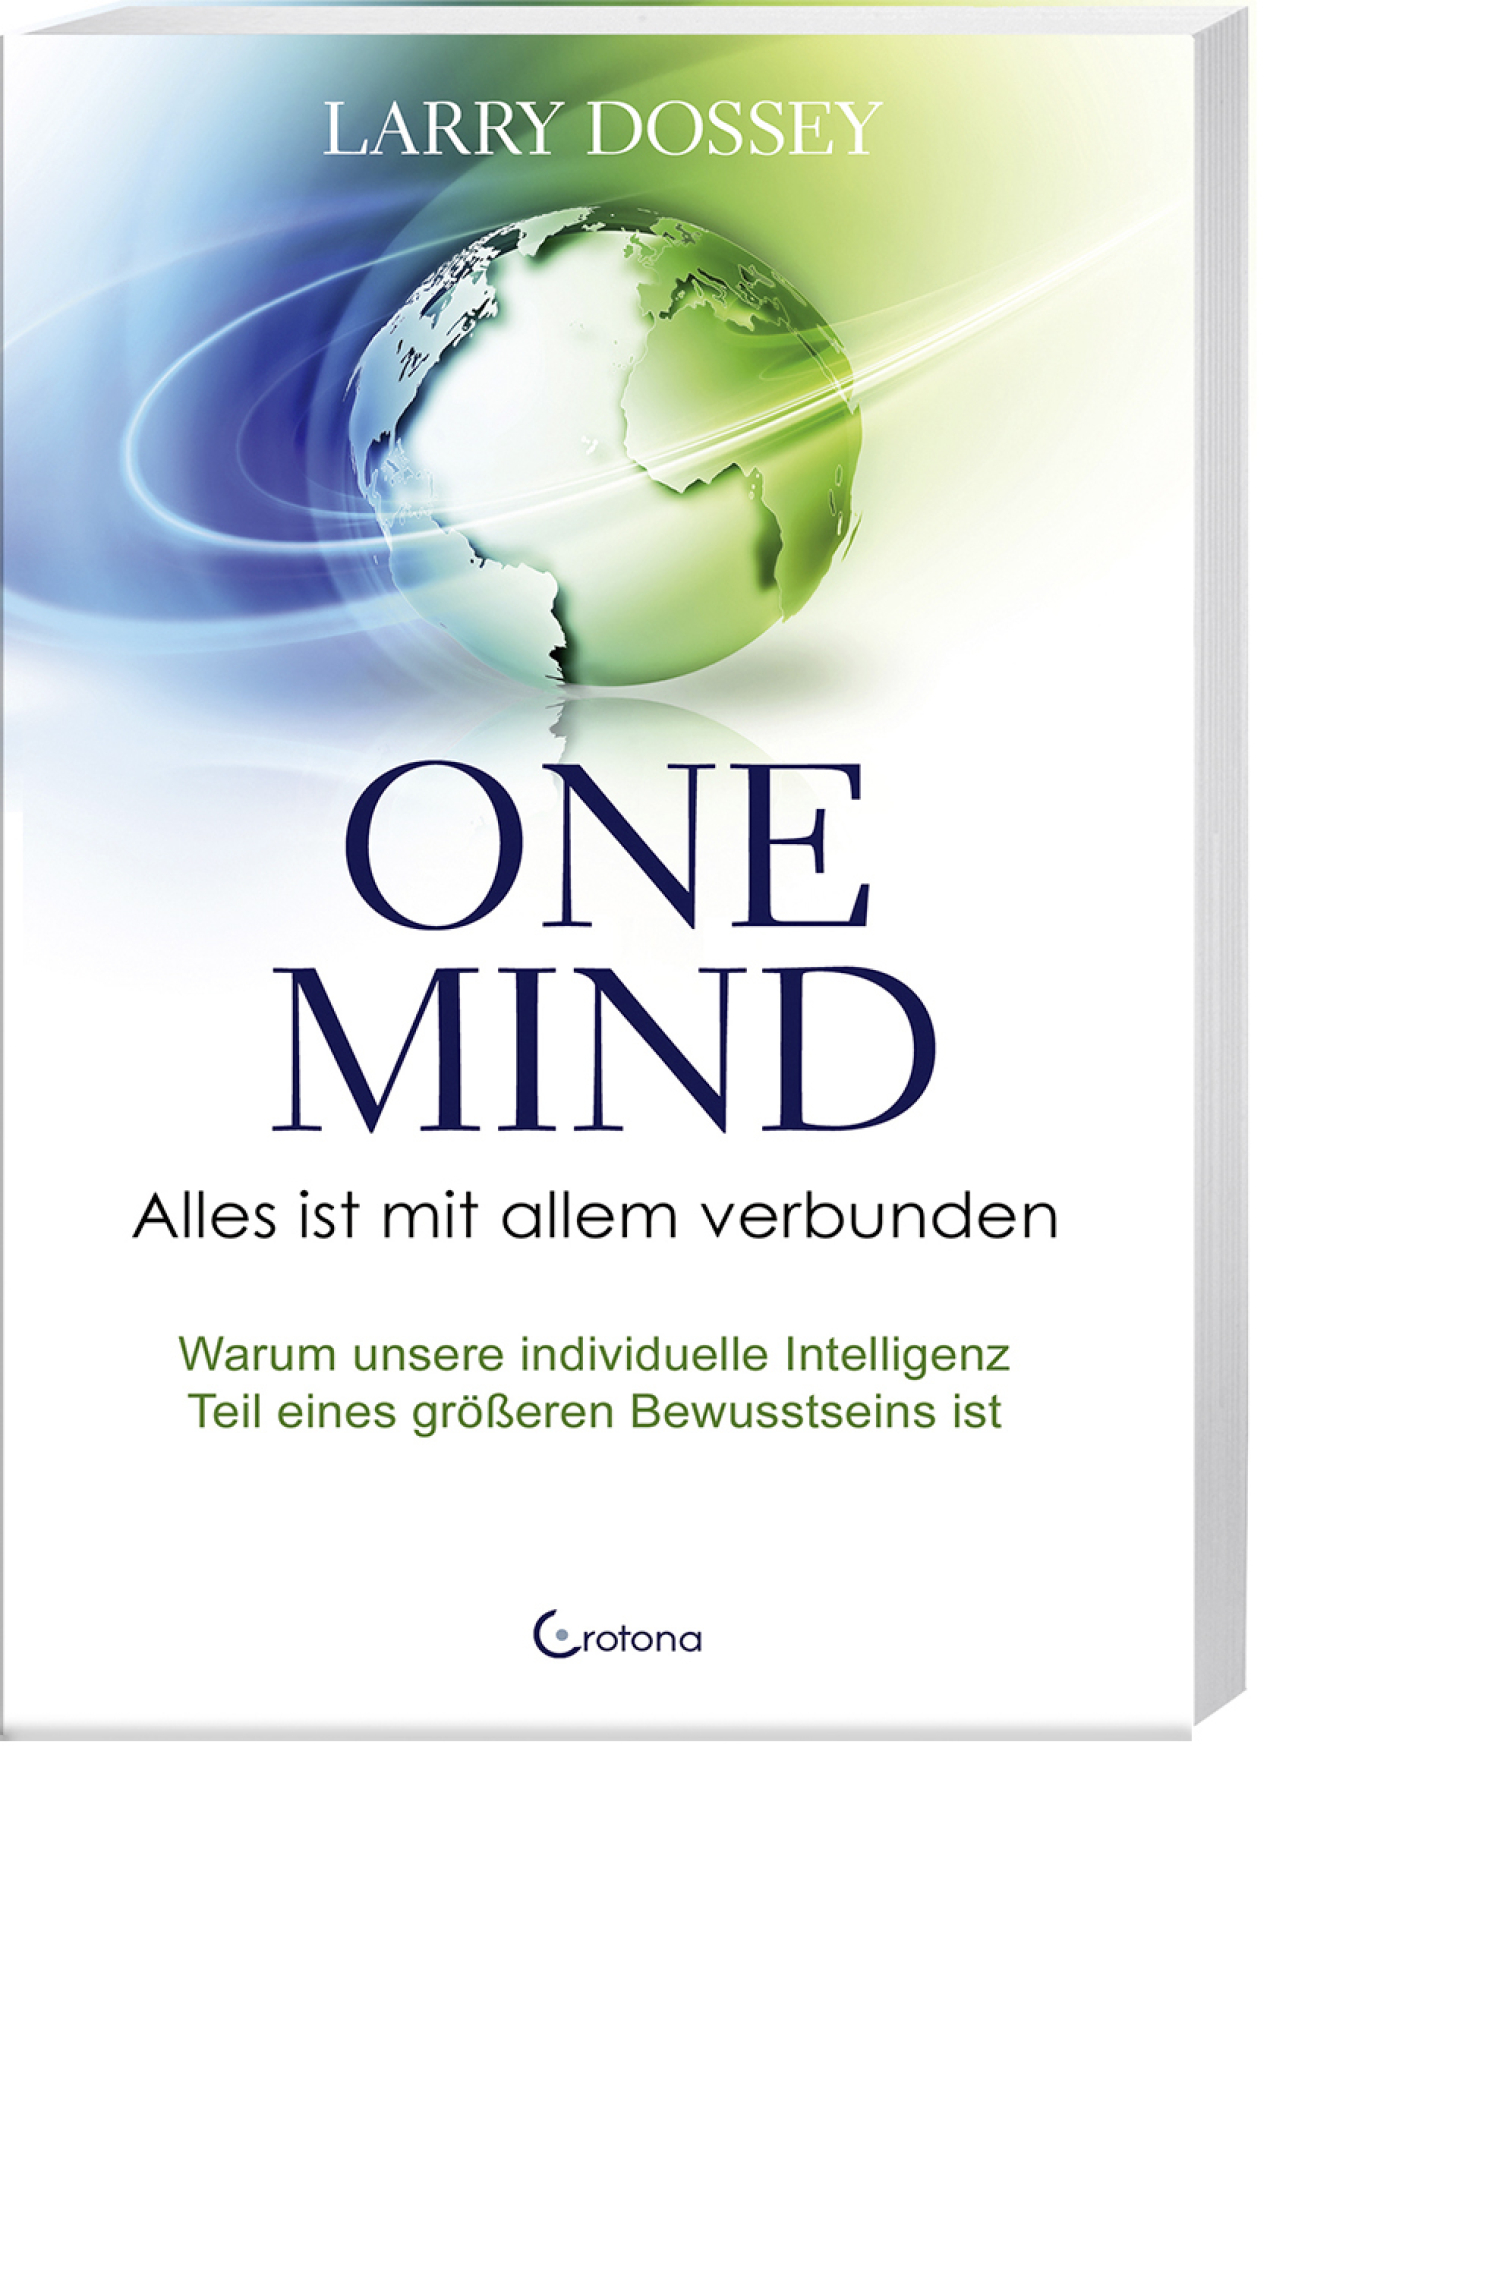 One Mind – Alles ist mit allem verbunden, Produktbild 1